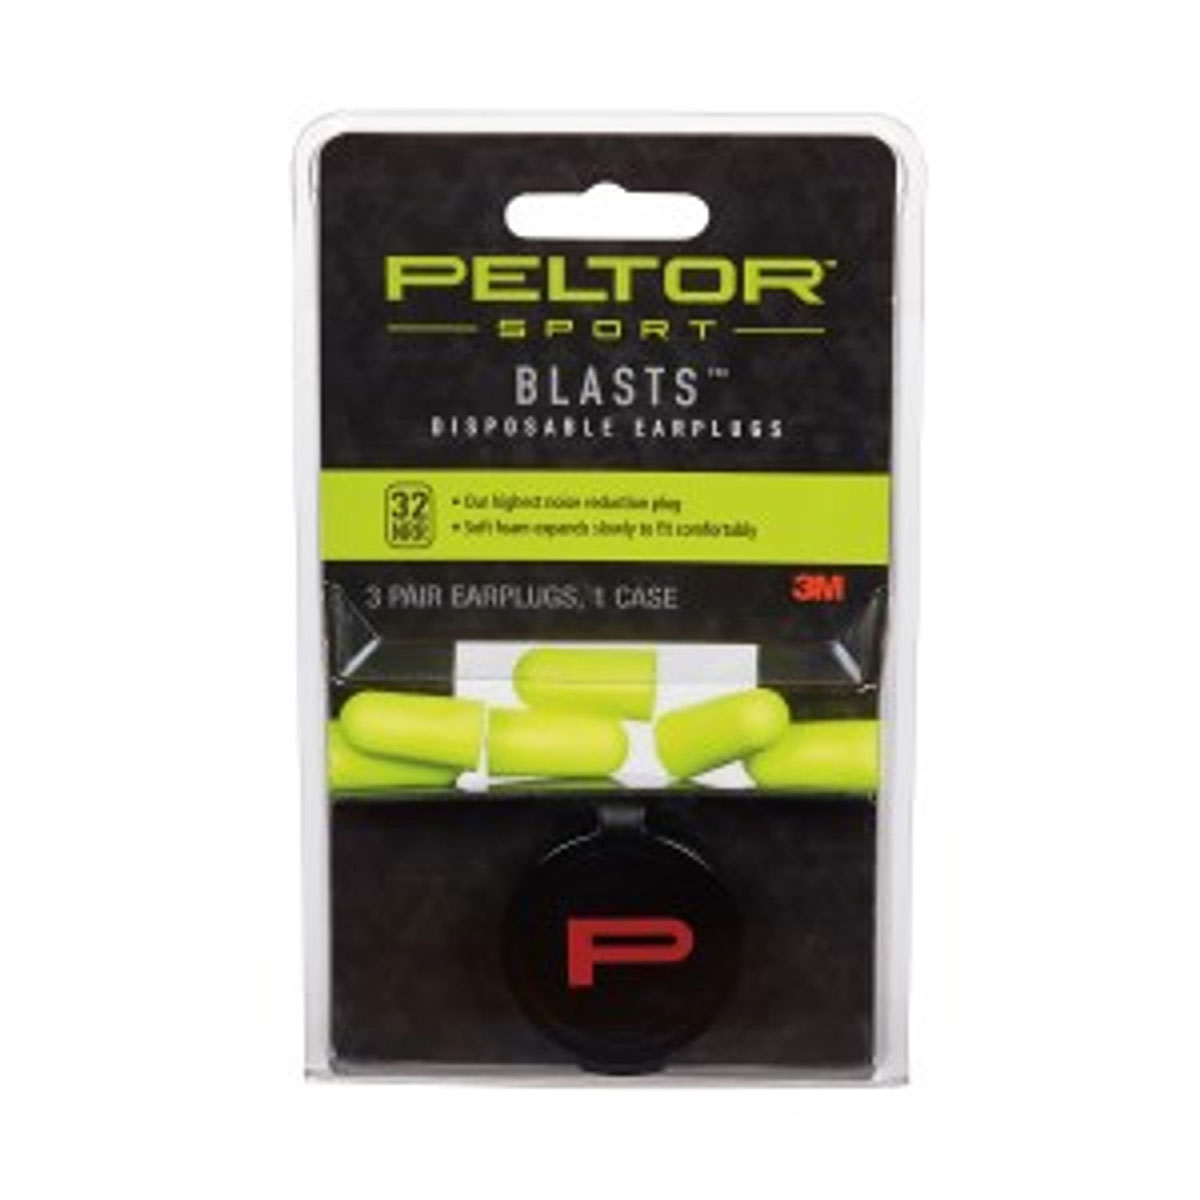 3M COMPANY - Peltor  Sport Blasts  Disposable Earplugs